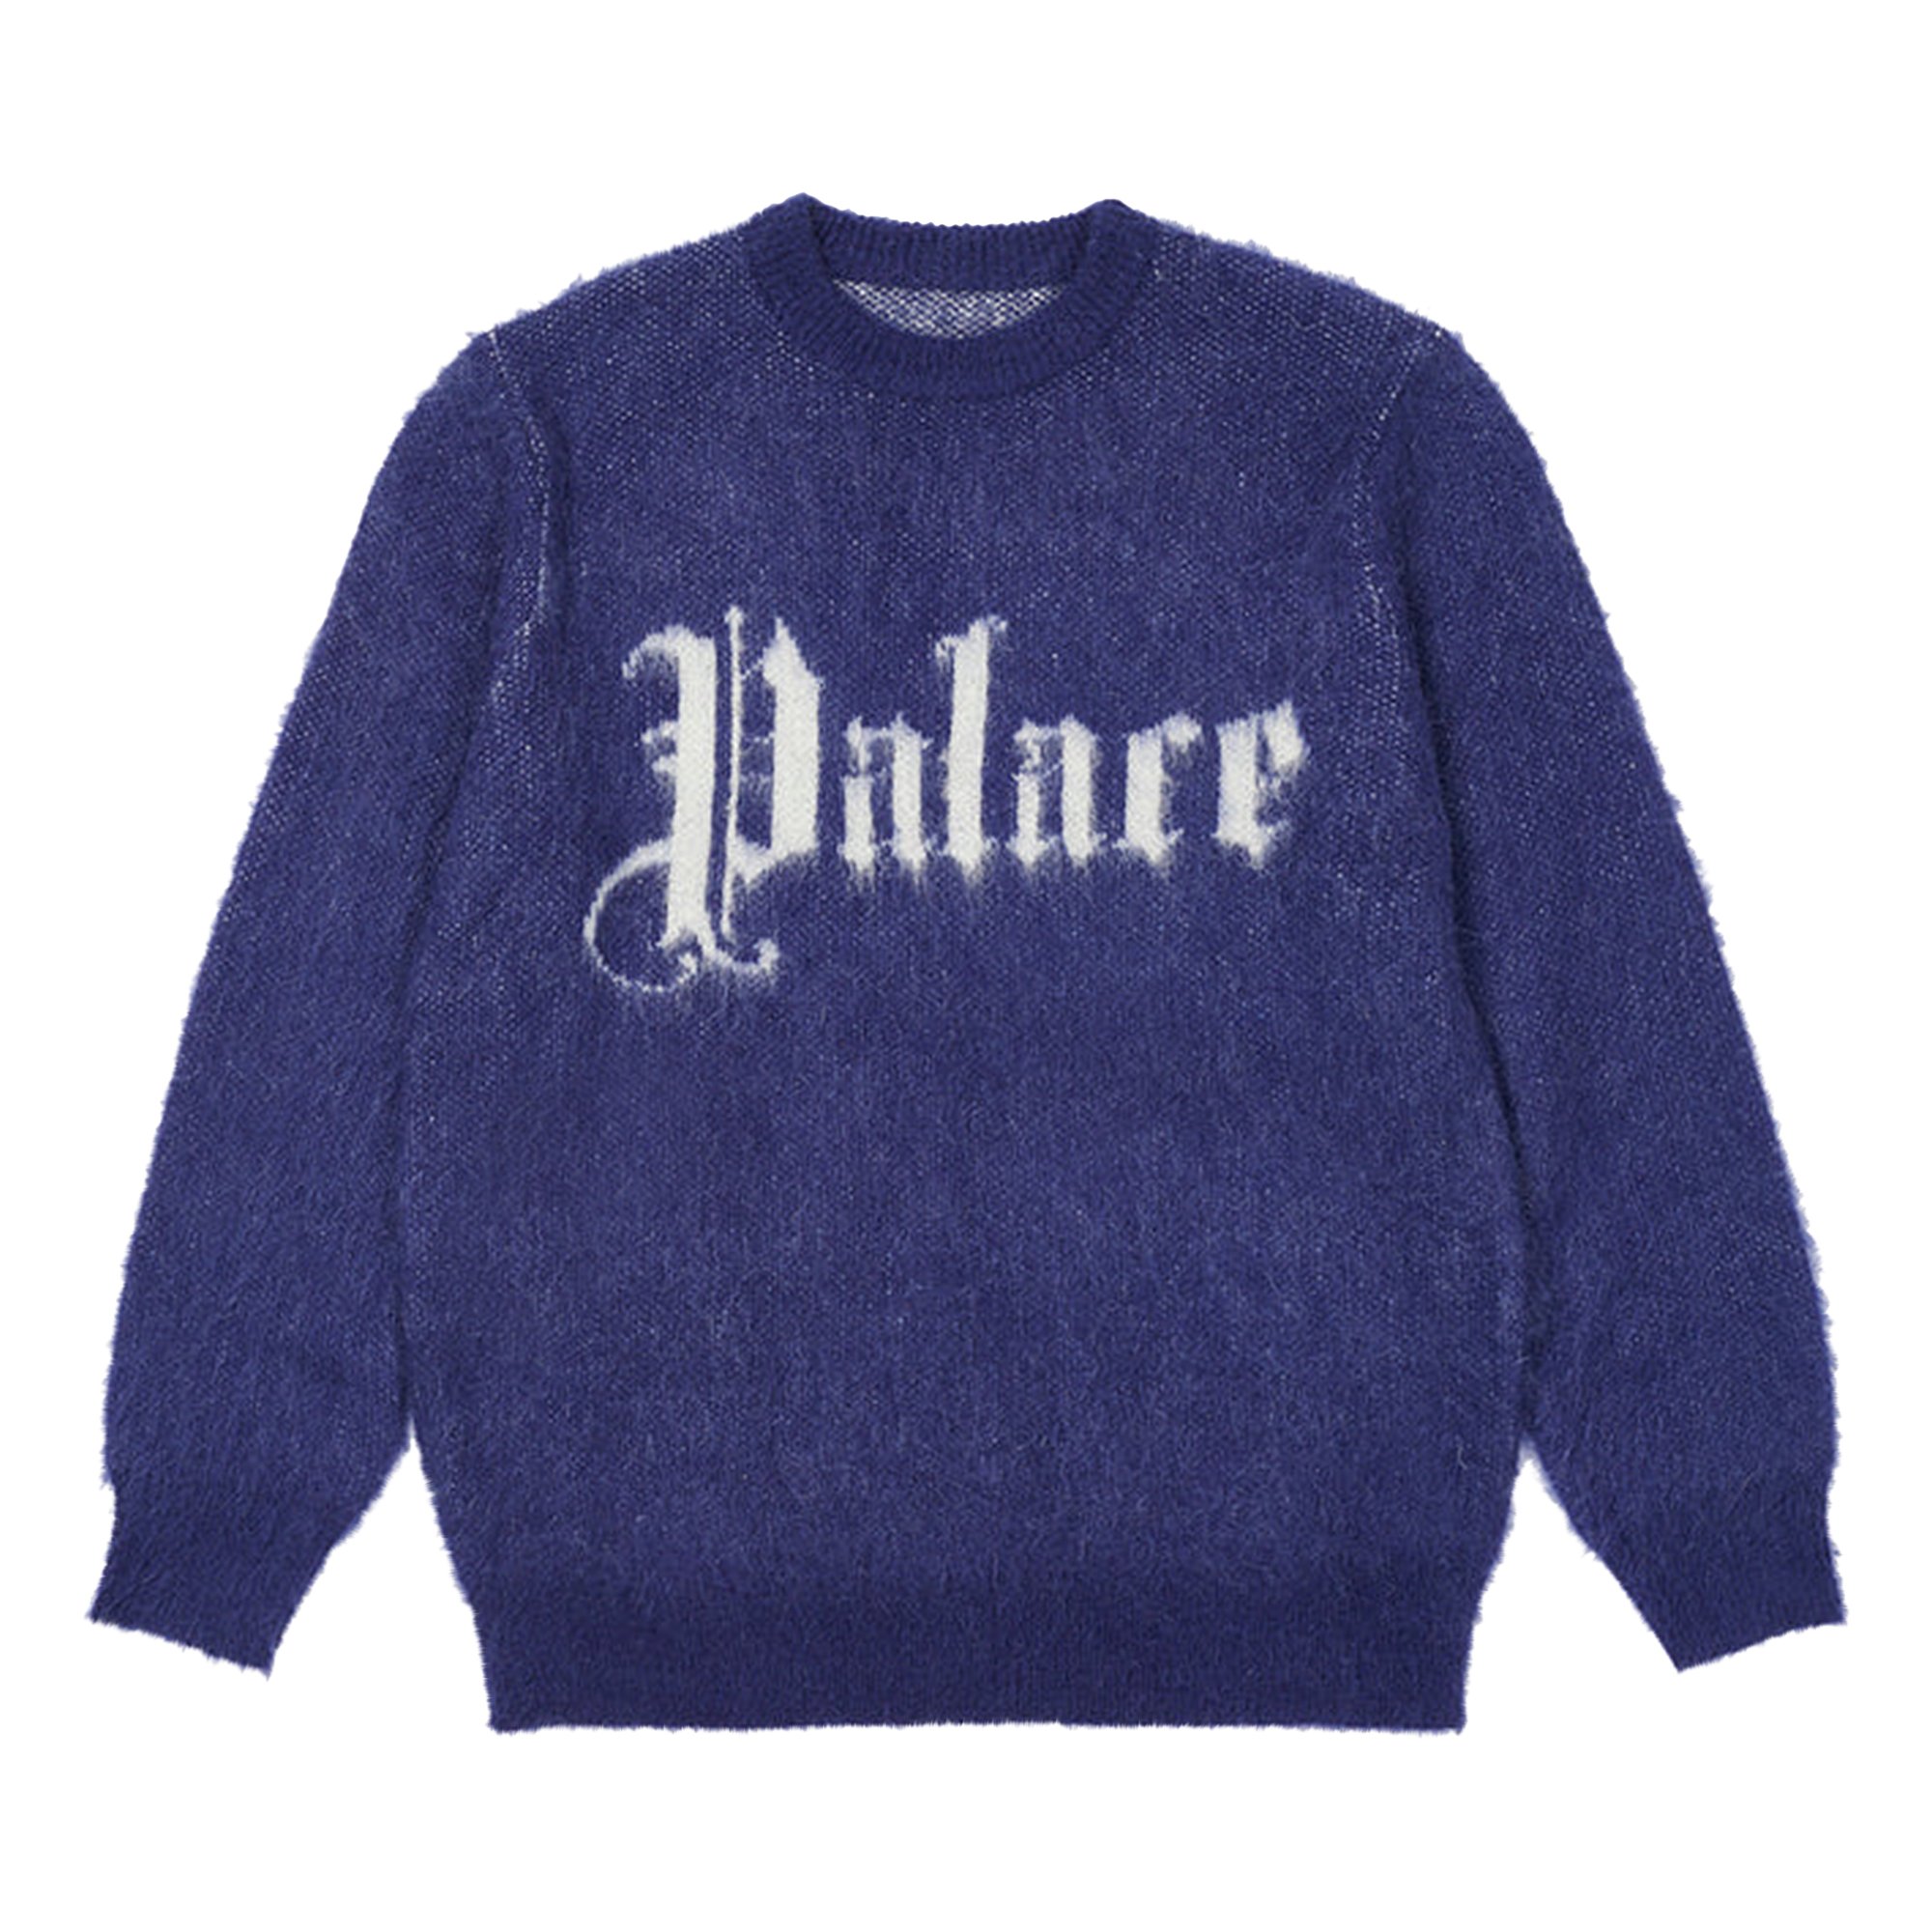 Buy Palace Ye Olde Palace Knit 'Navy' - P23KW147 | GOAT